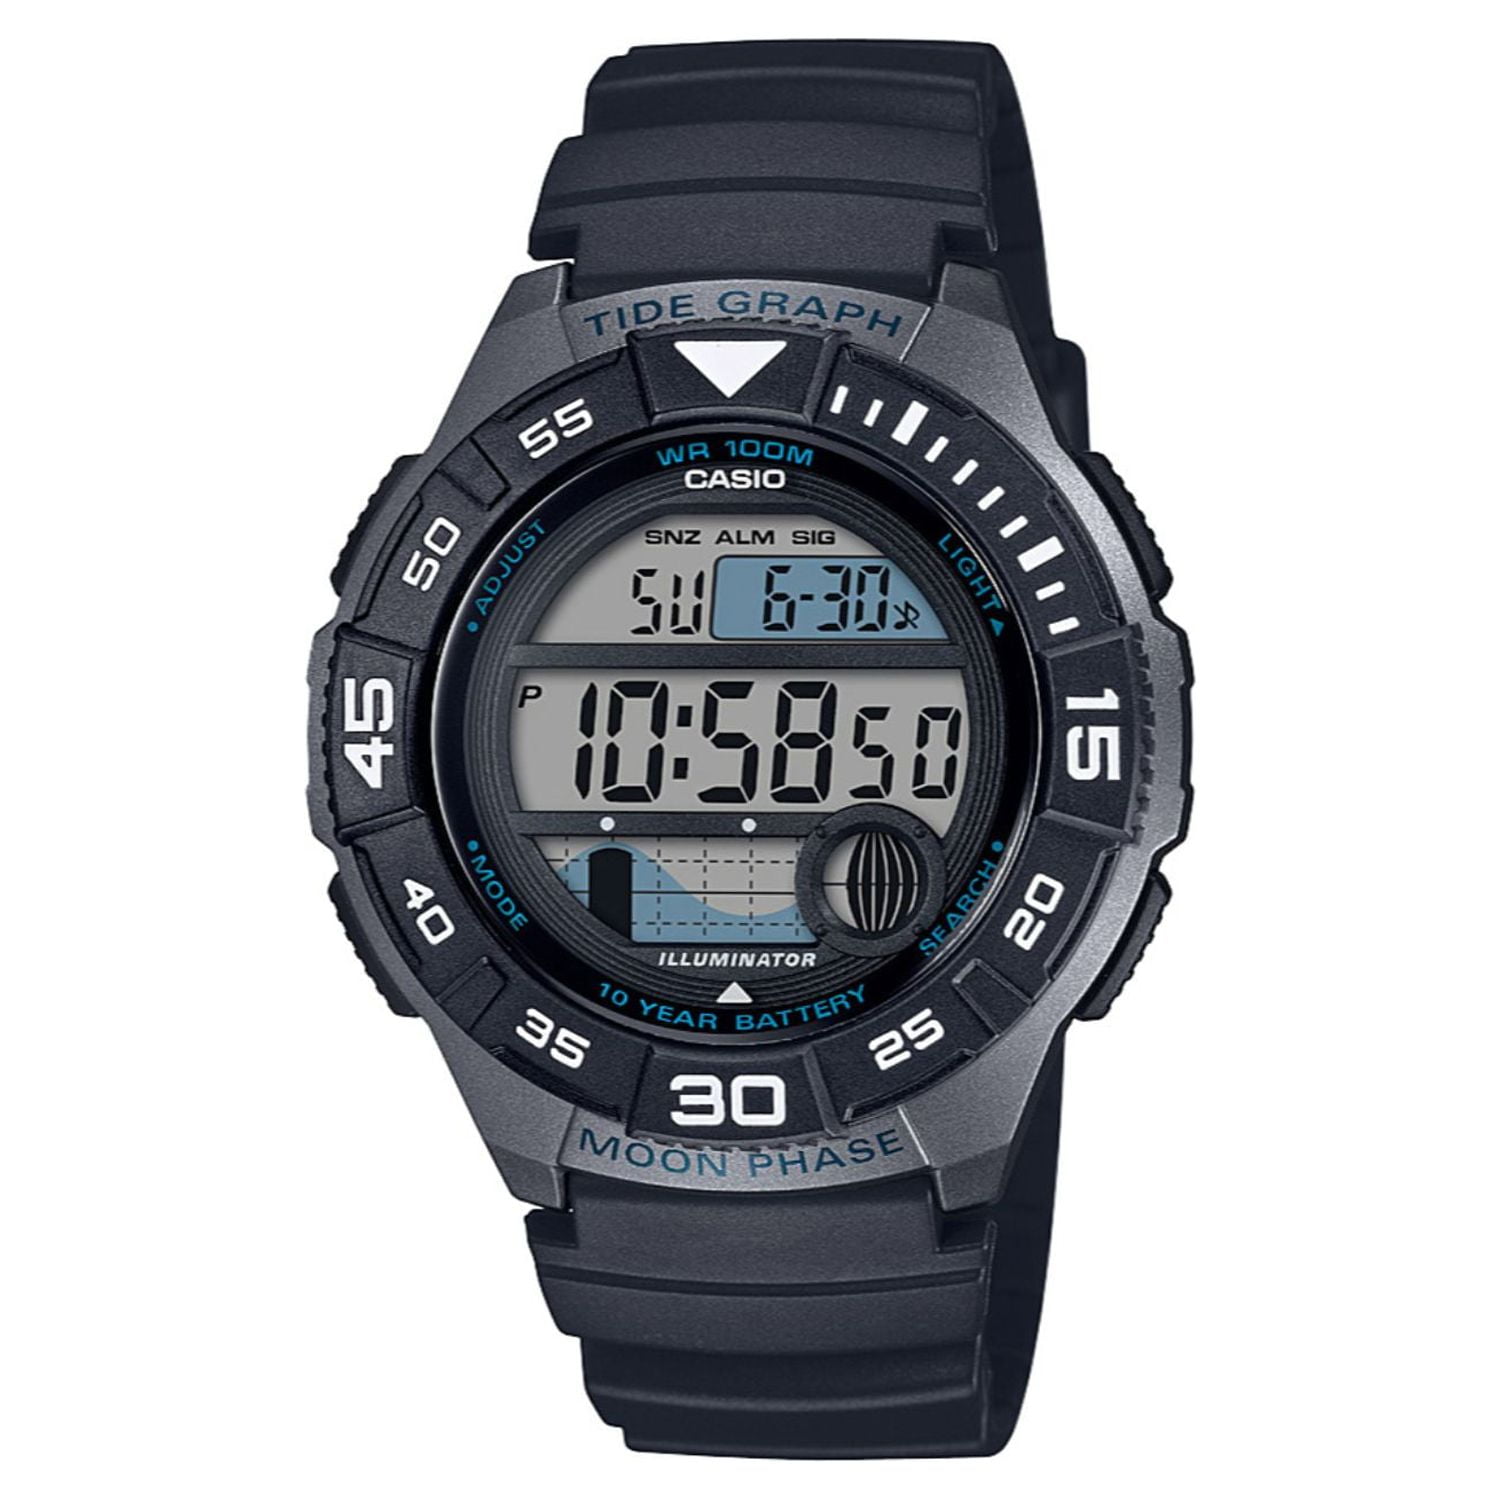 Casio Men's Sport Marine Watch Black WS1100H-1AV